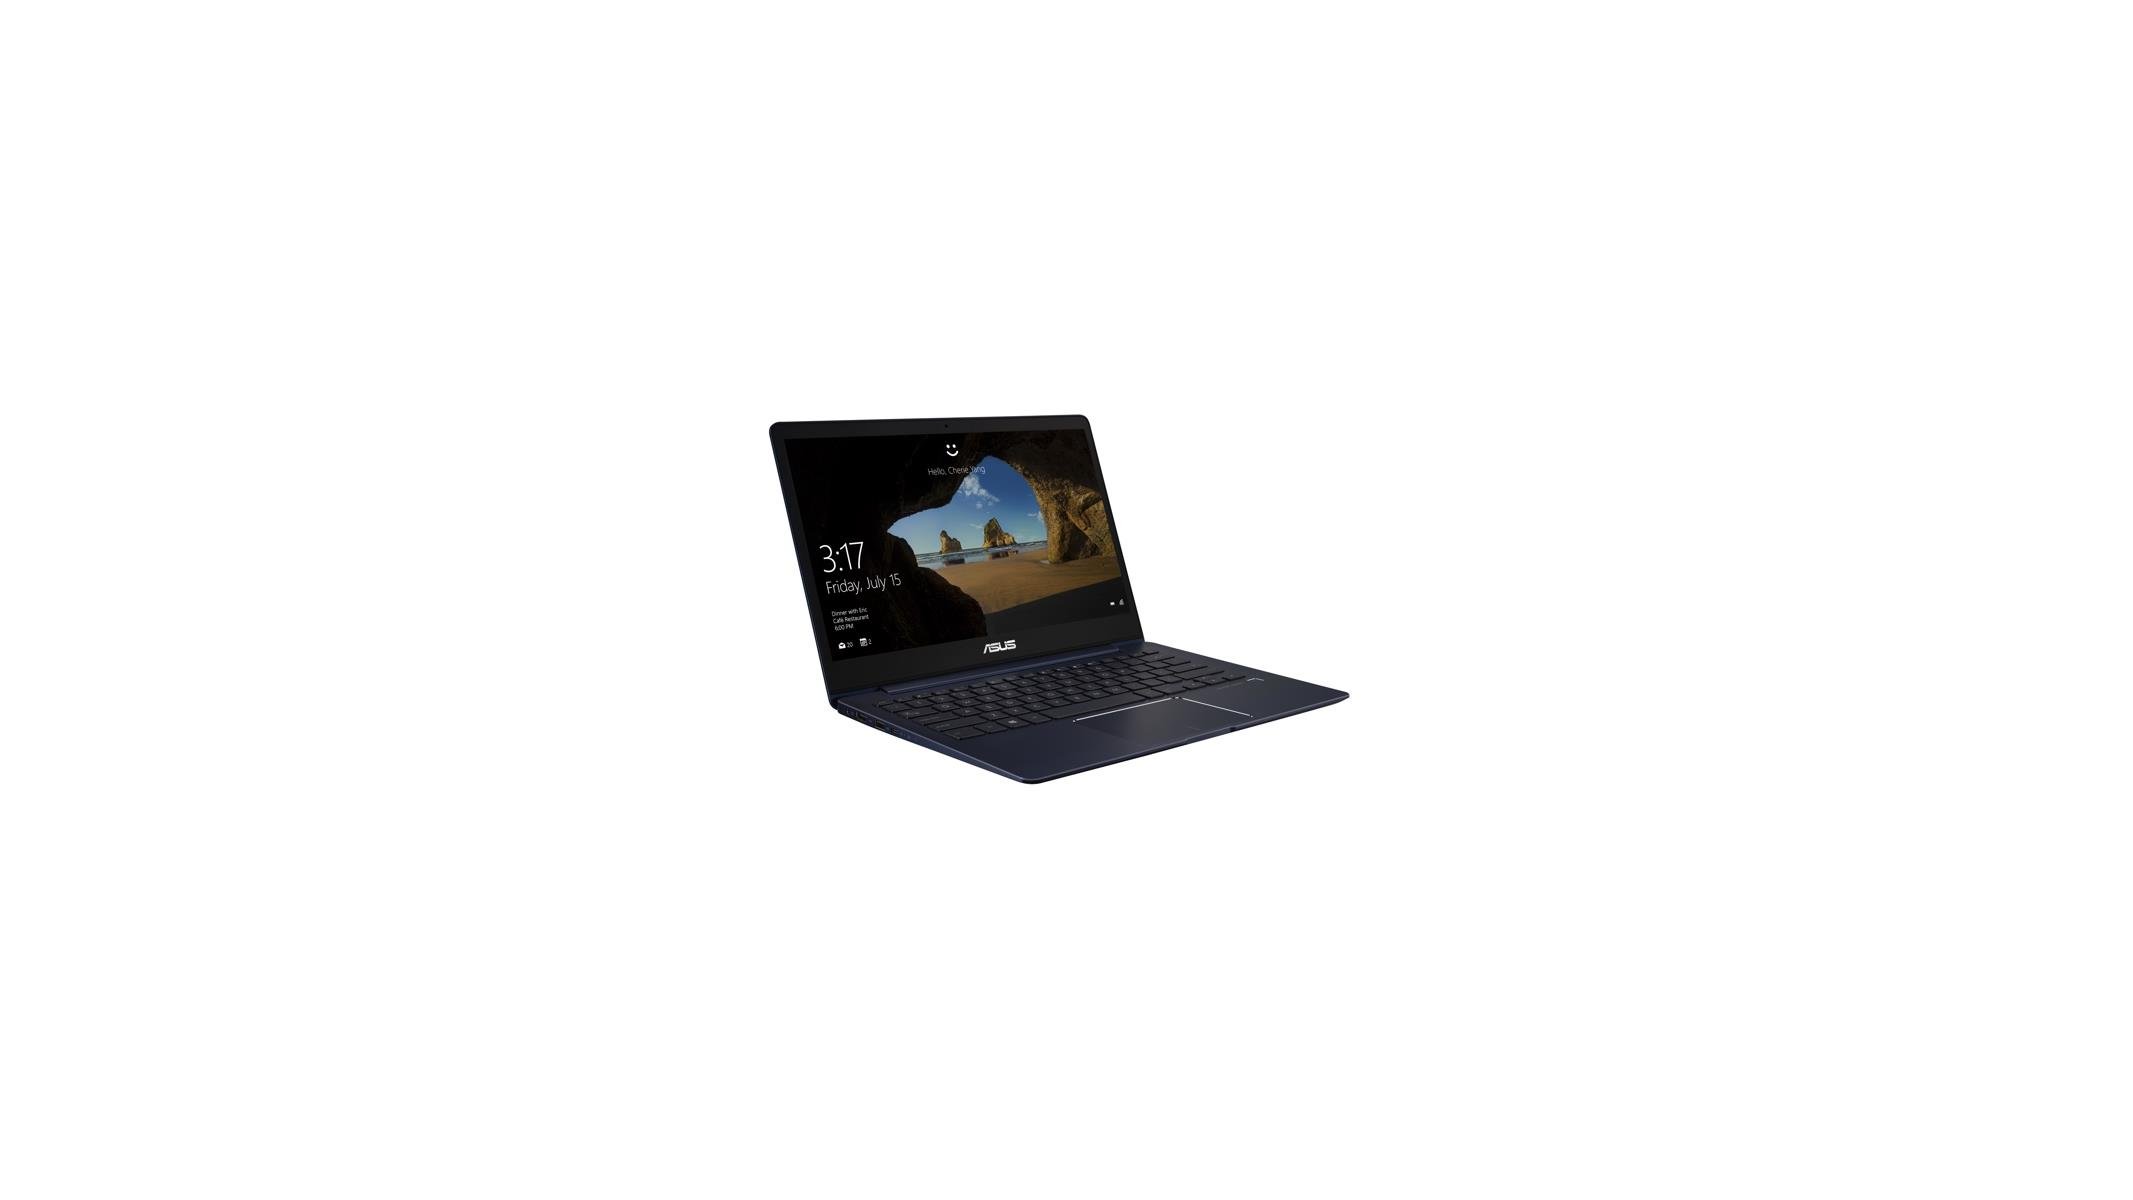 ASUS Announces ZenBook 13 UX331 Ultraportable Laptop With Potent